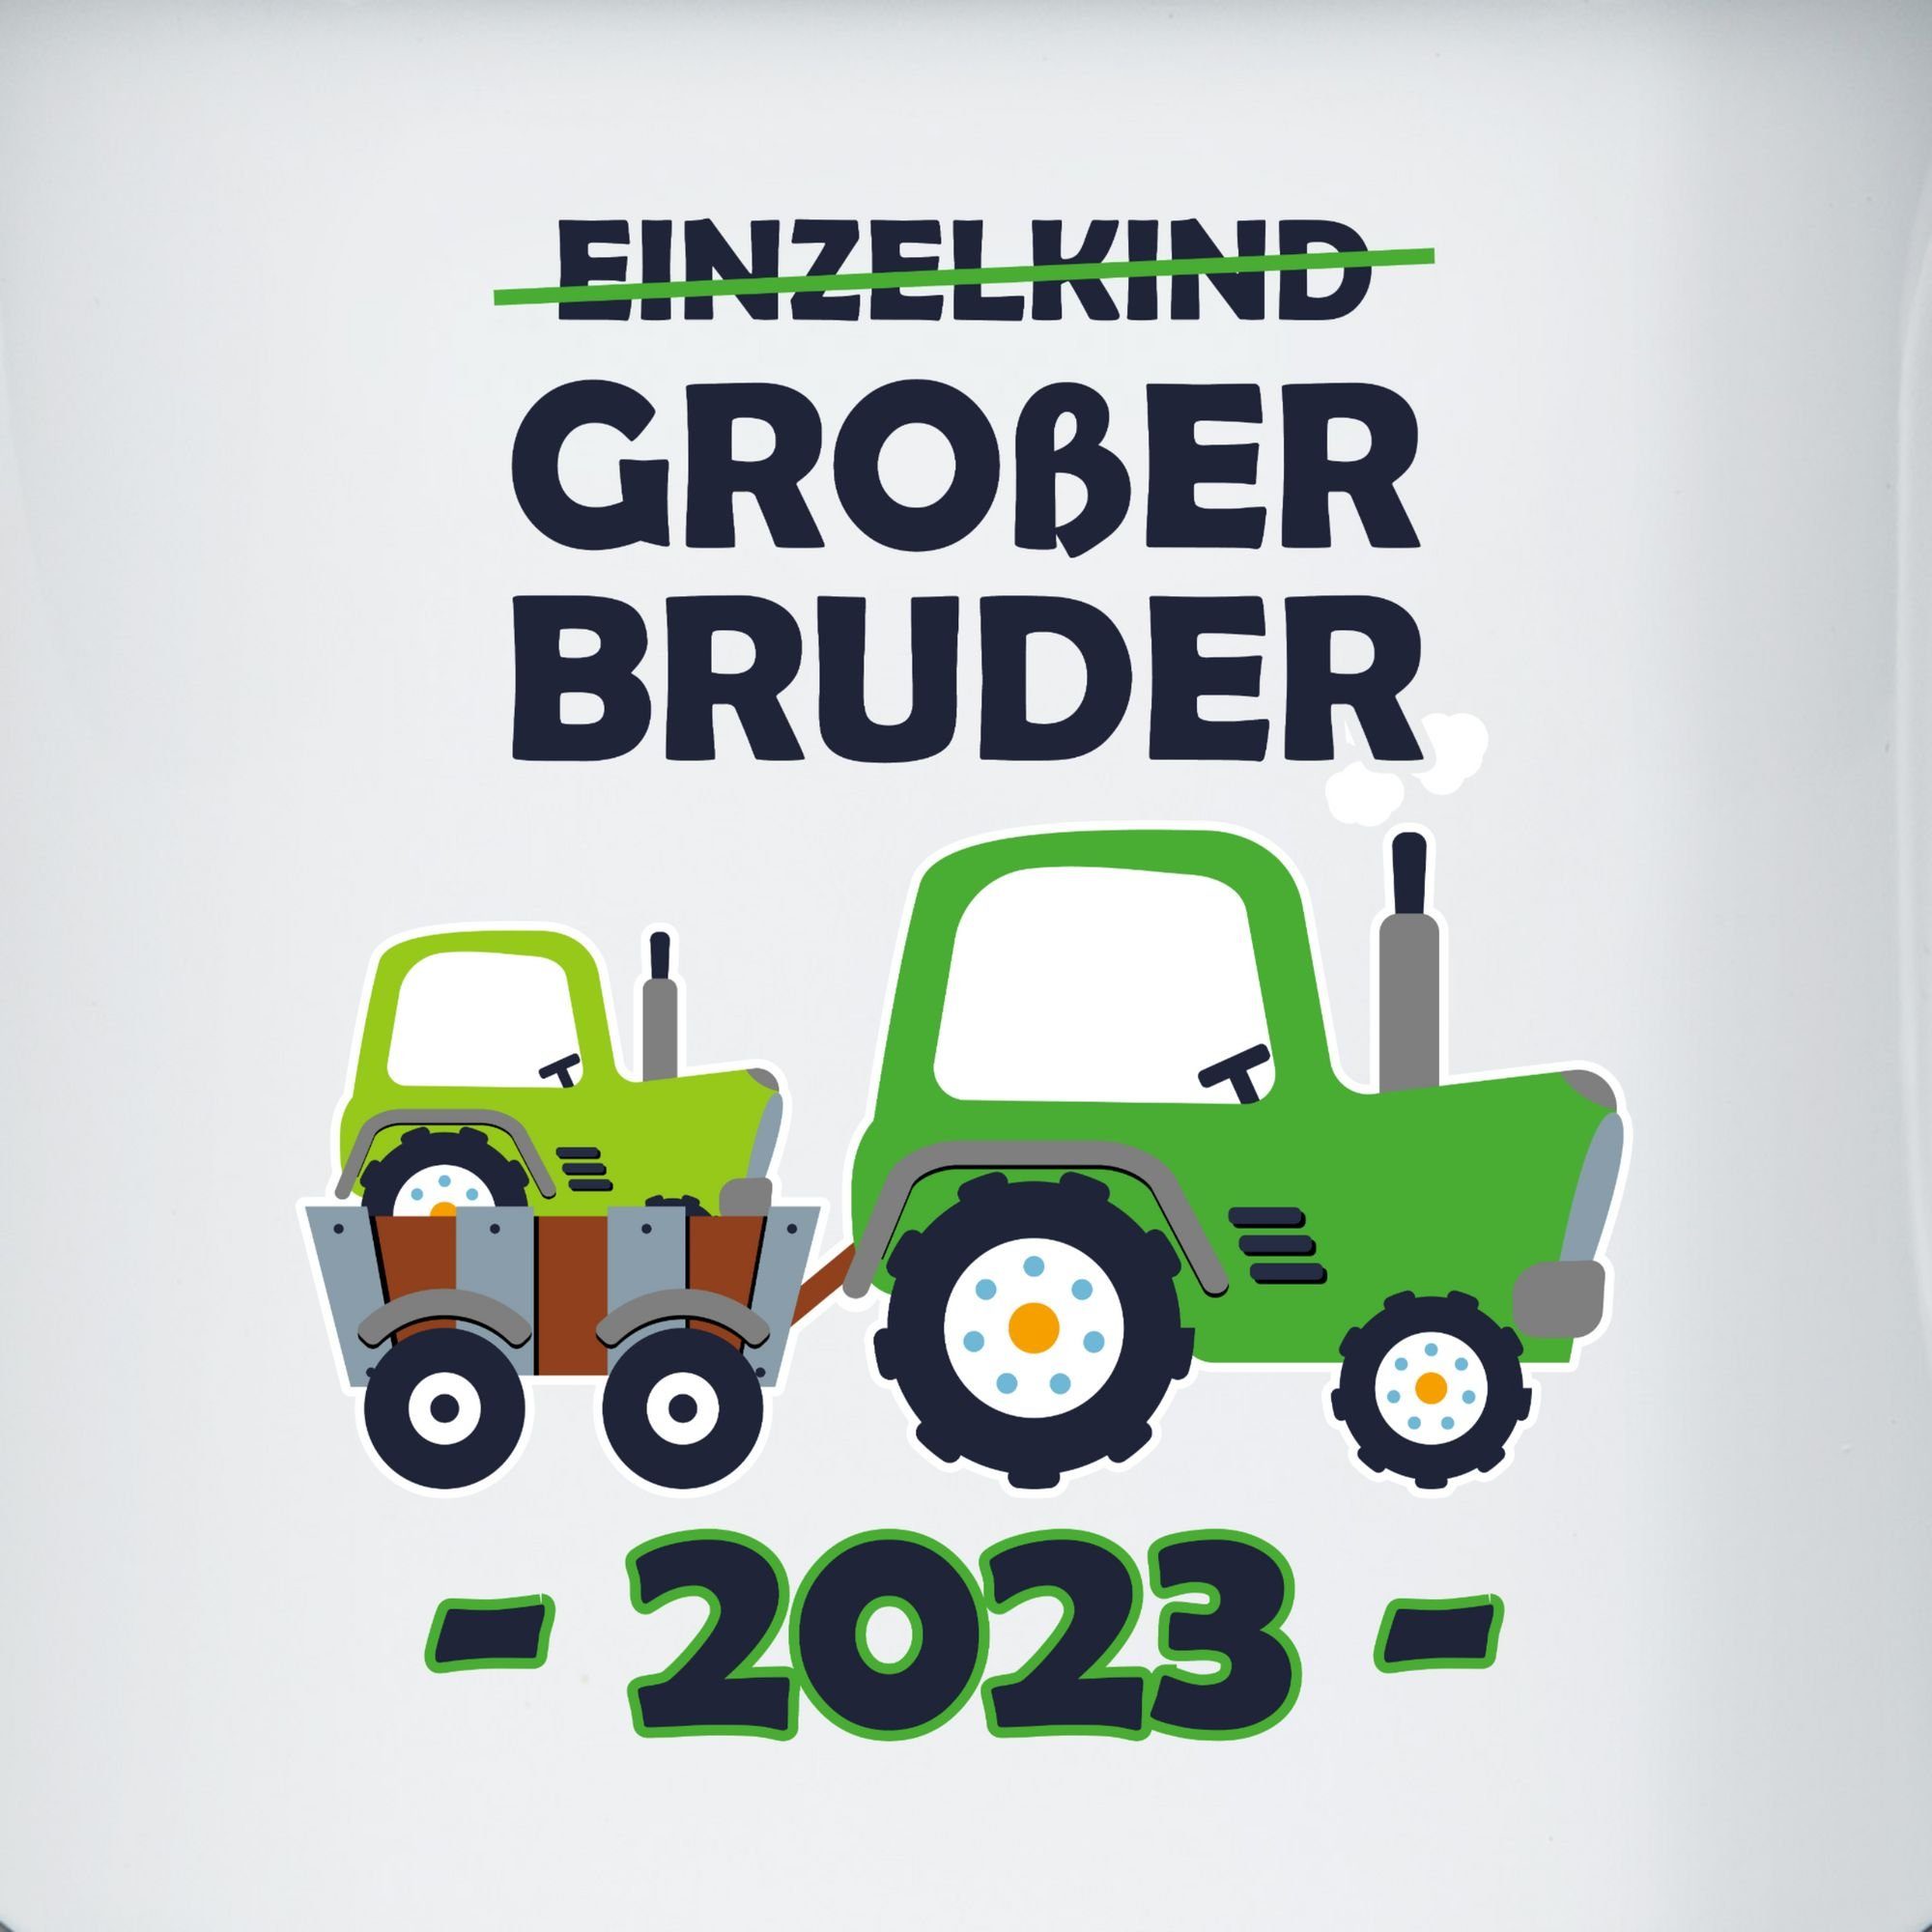 Traktor, Schwarz Bruder Tasse Stahlblech, Shirtracer Großer Weiß Einzelkind Großer 2023 2 Bruder